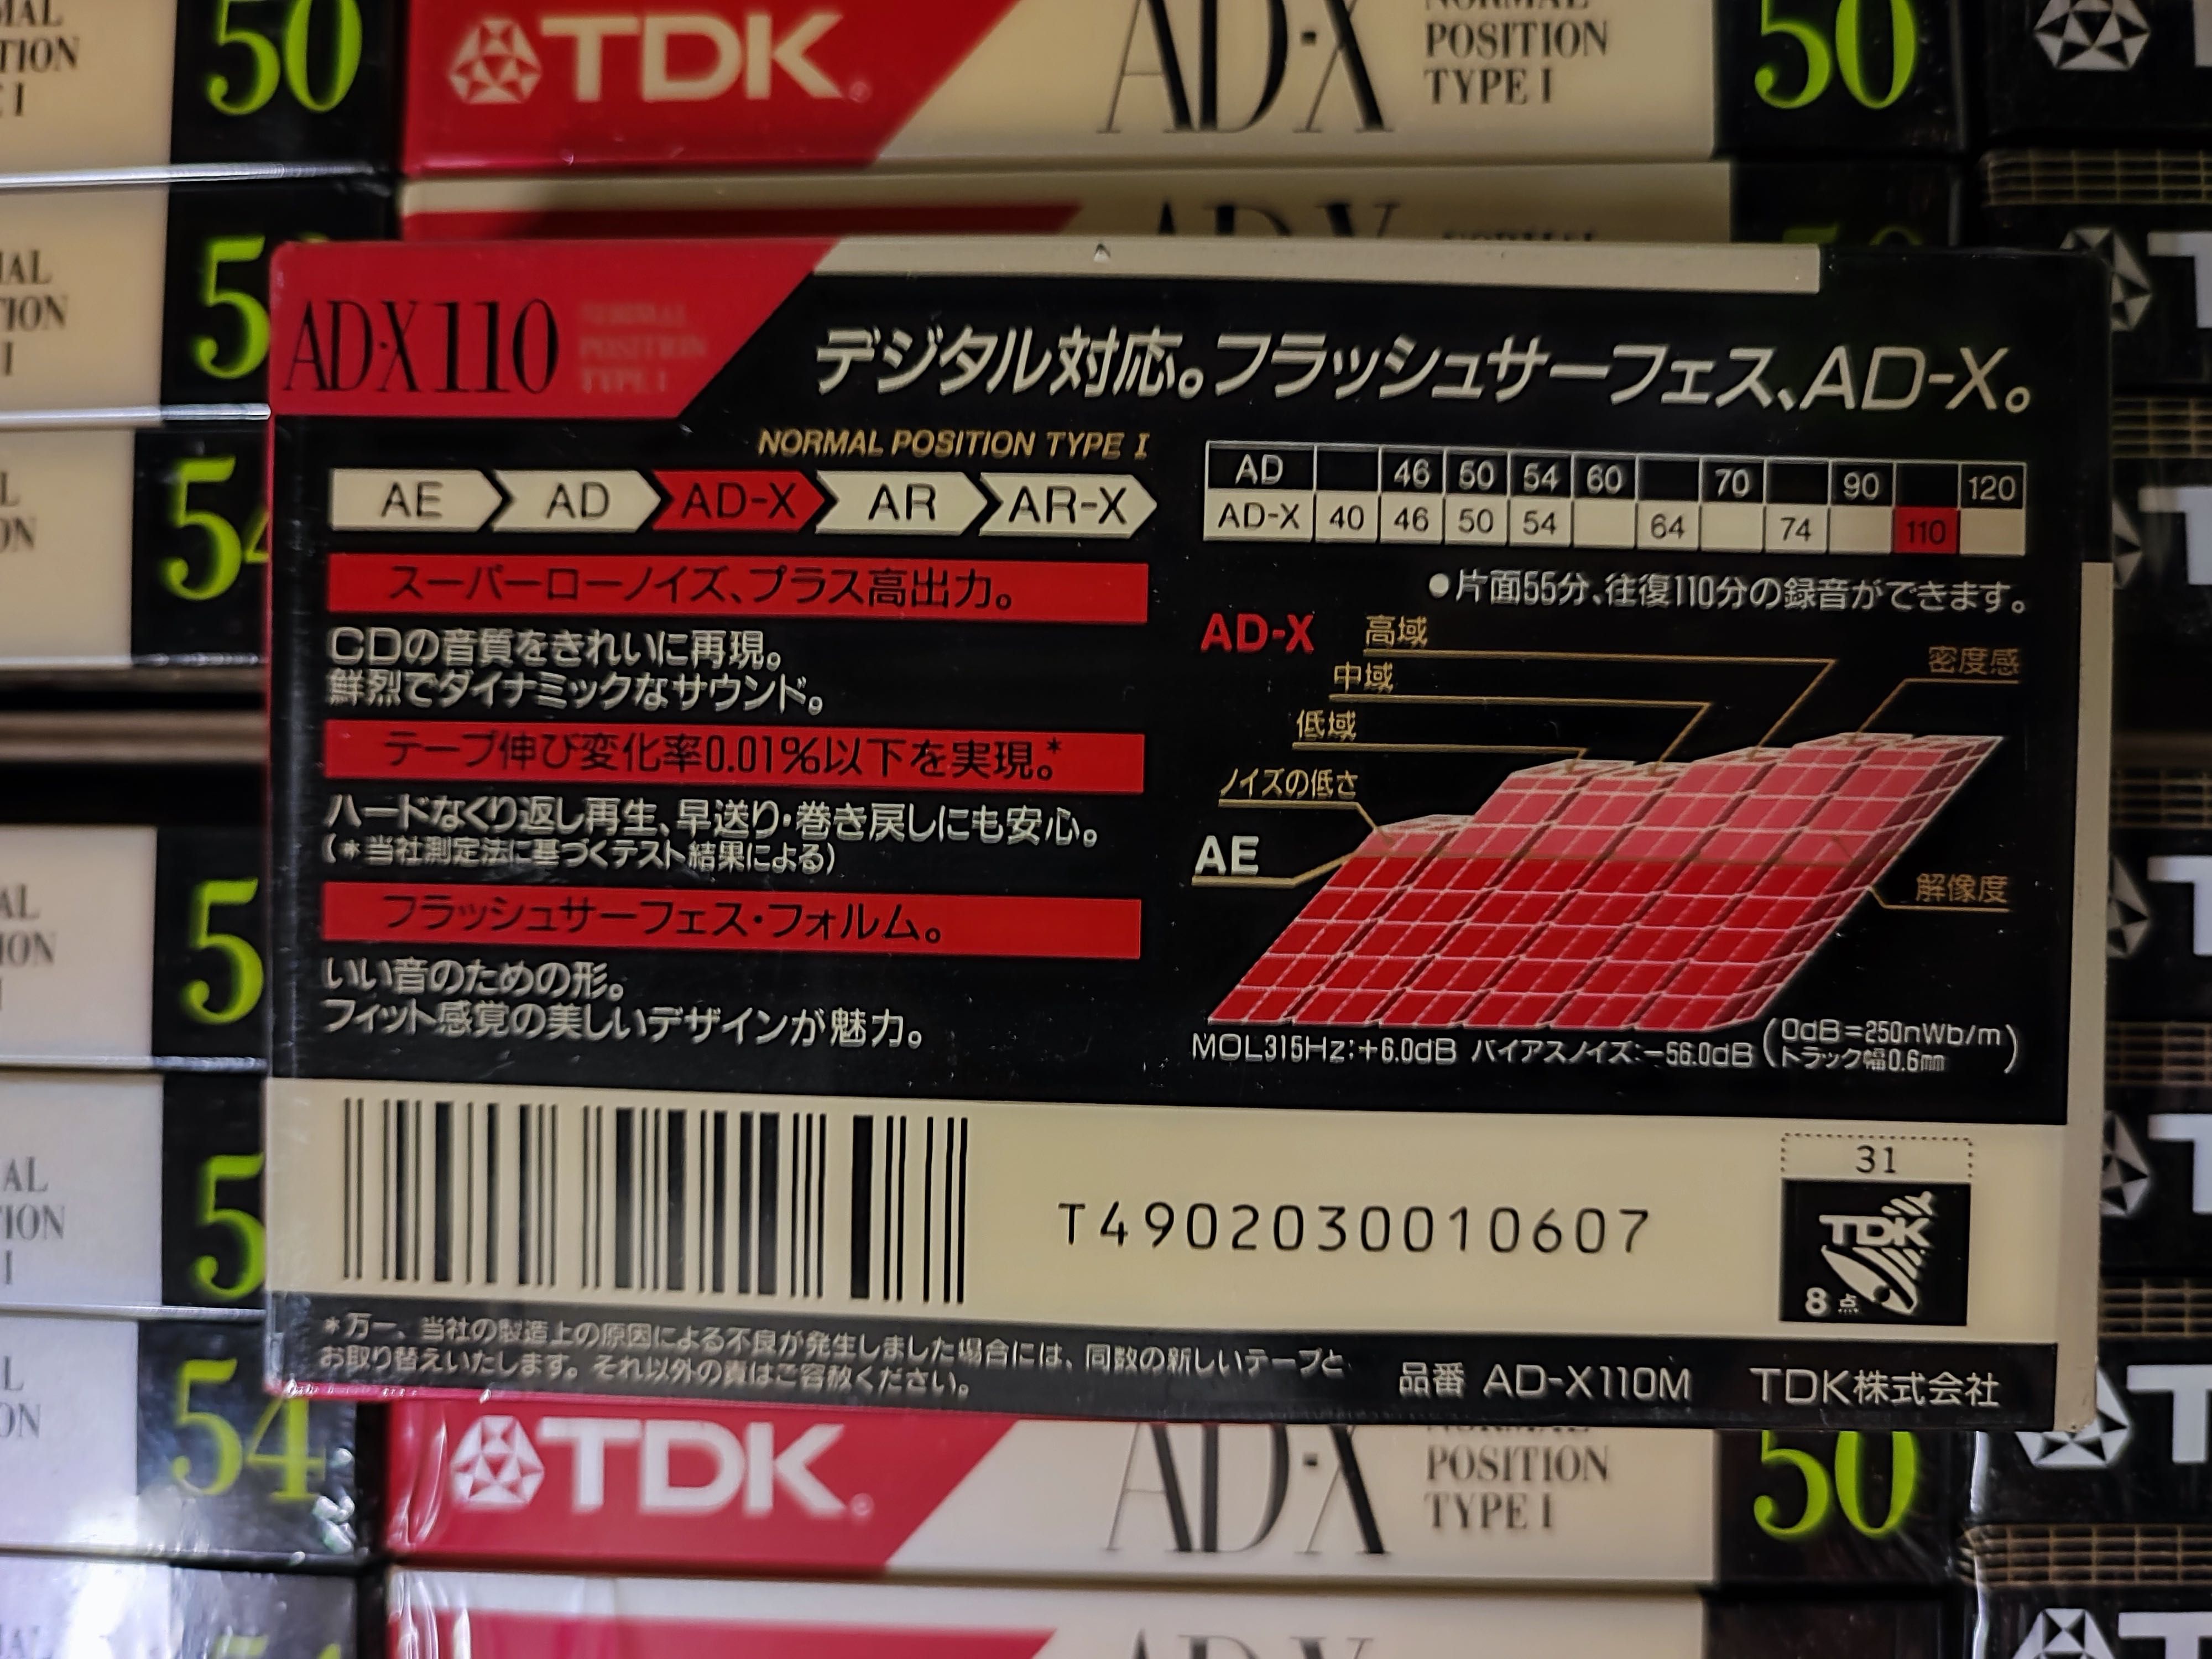 Cassette TDK AD-X C110